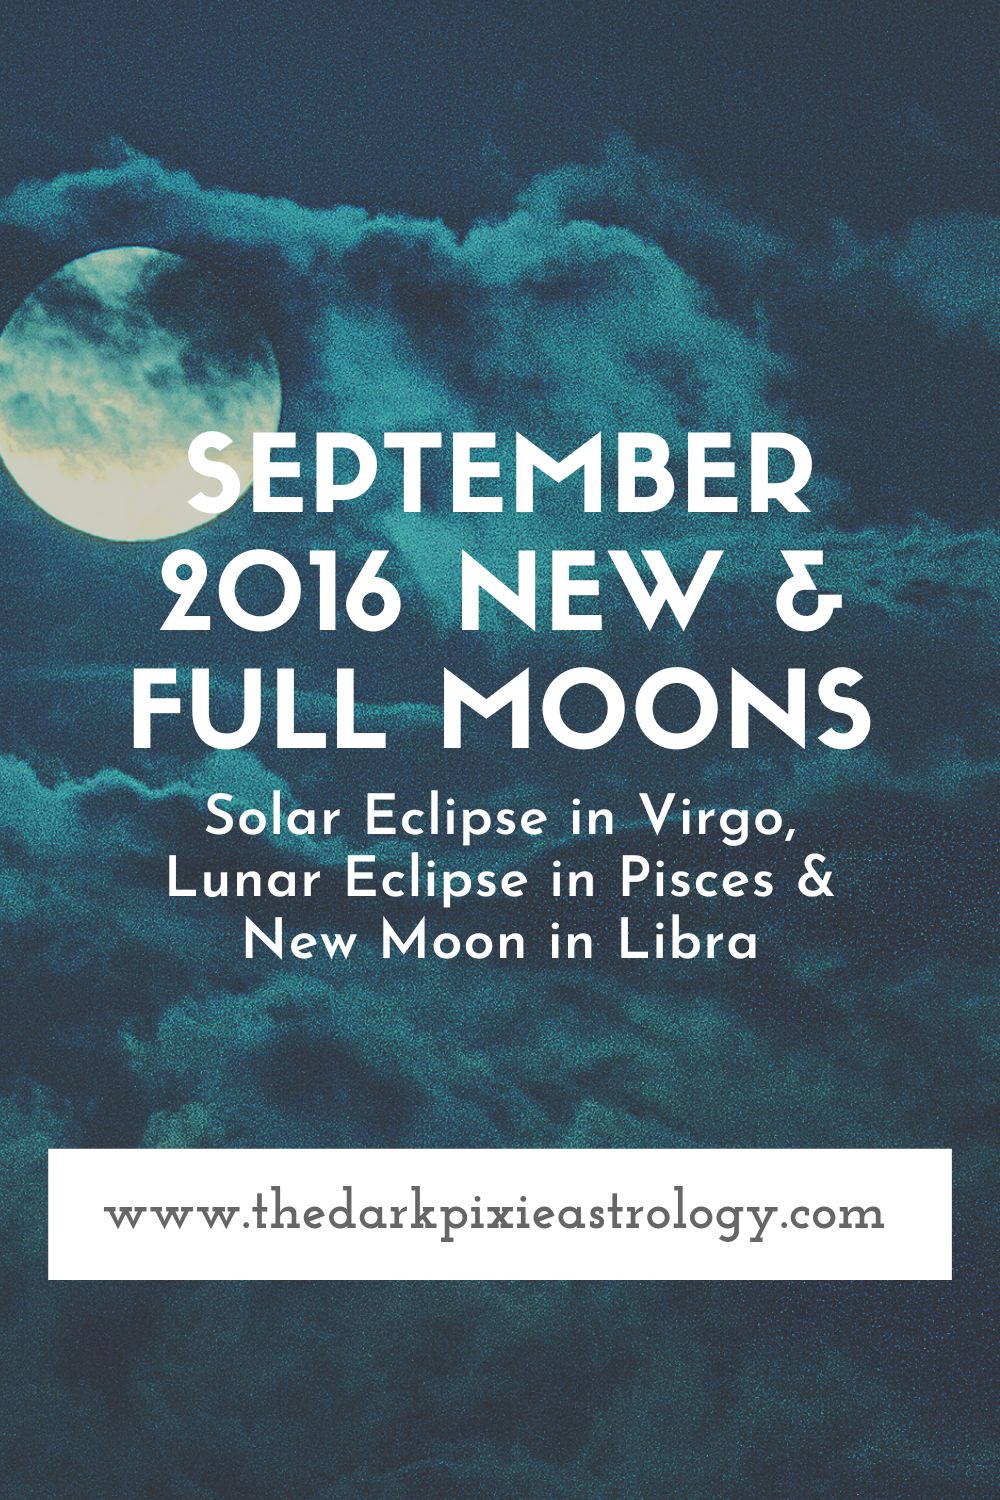 September 2016 New & Full Moons - The Dark Pixie Astrology